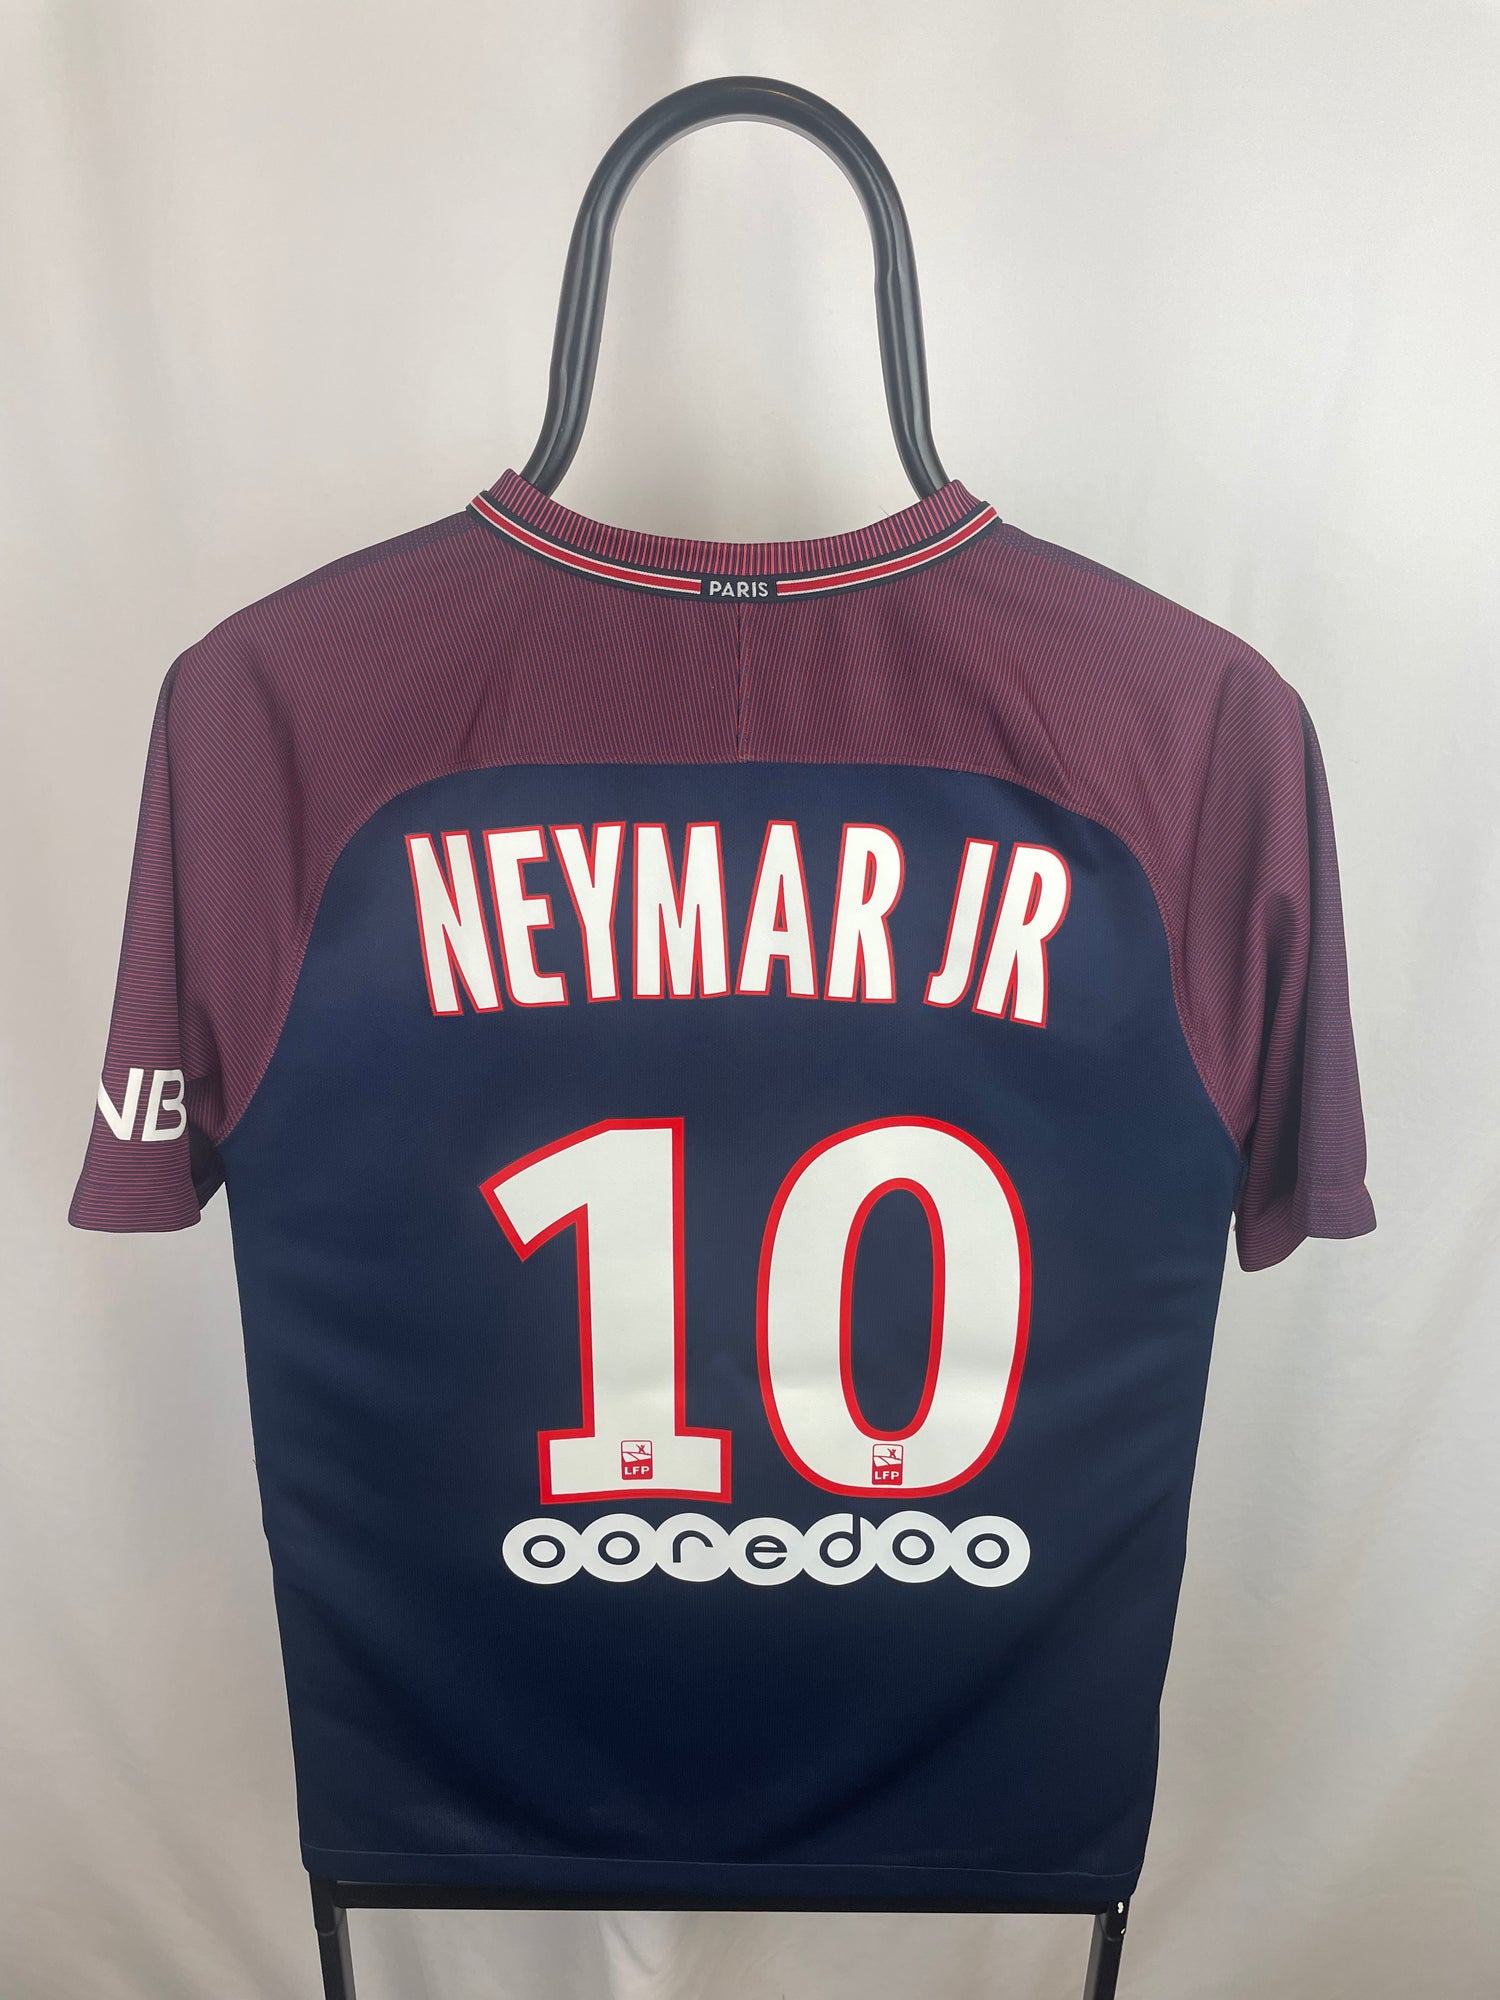 Neymar Jr PSG 17/18 hjemmebanetrøje - S